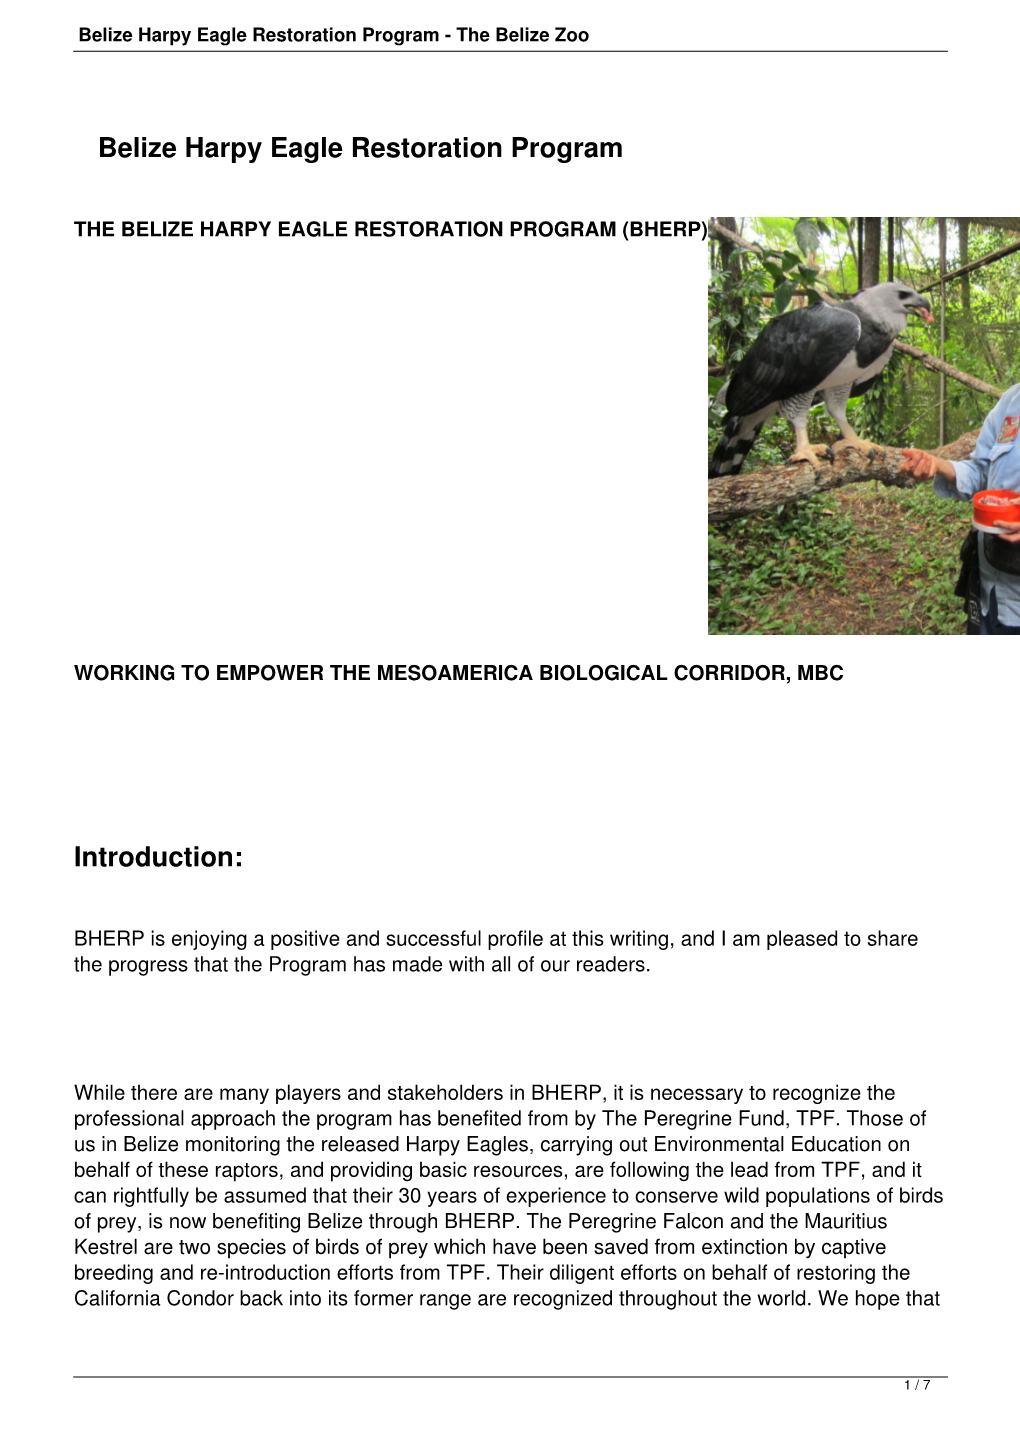 Belize Harpy Eagle Restoration Program - the Belize Zoo